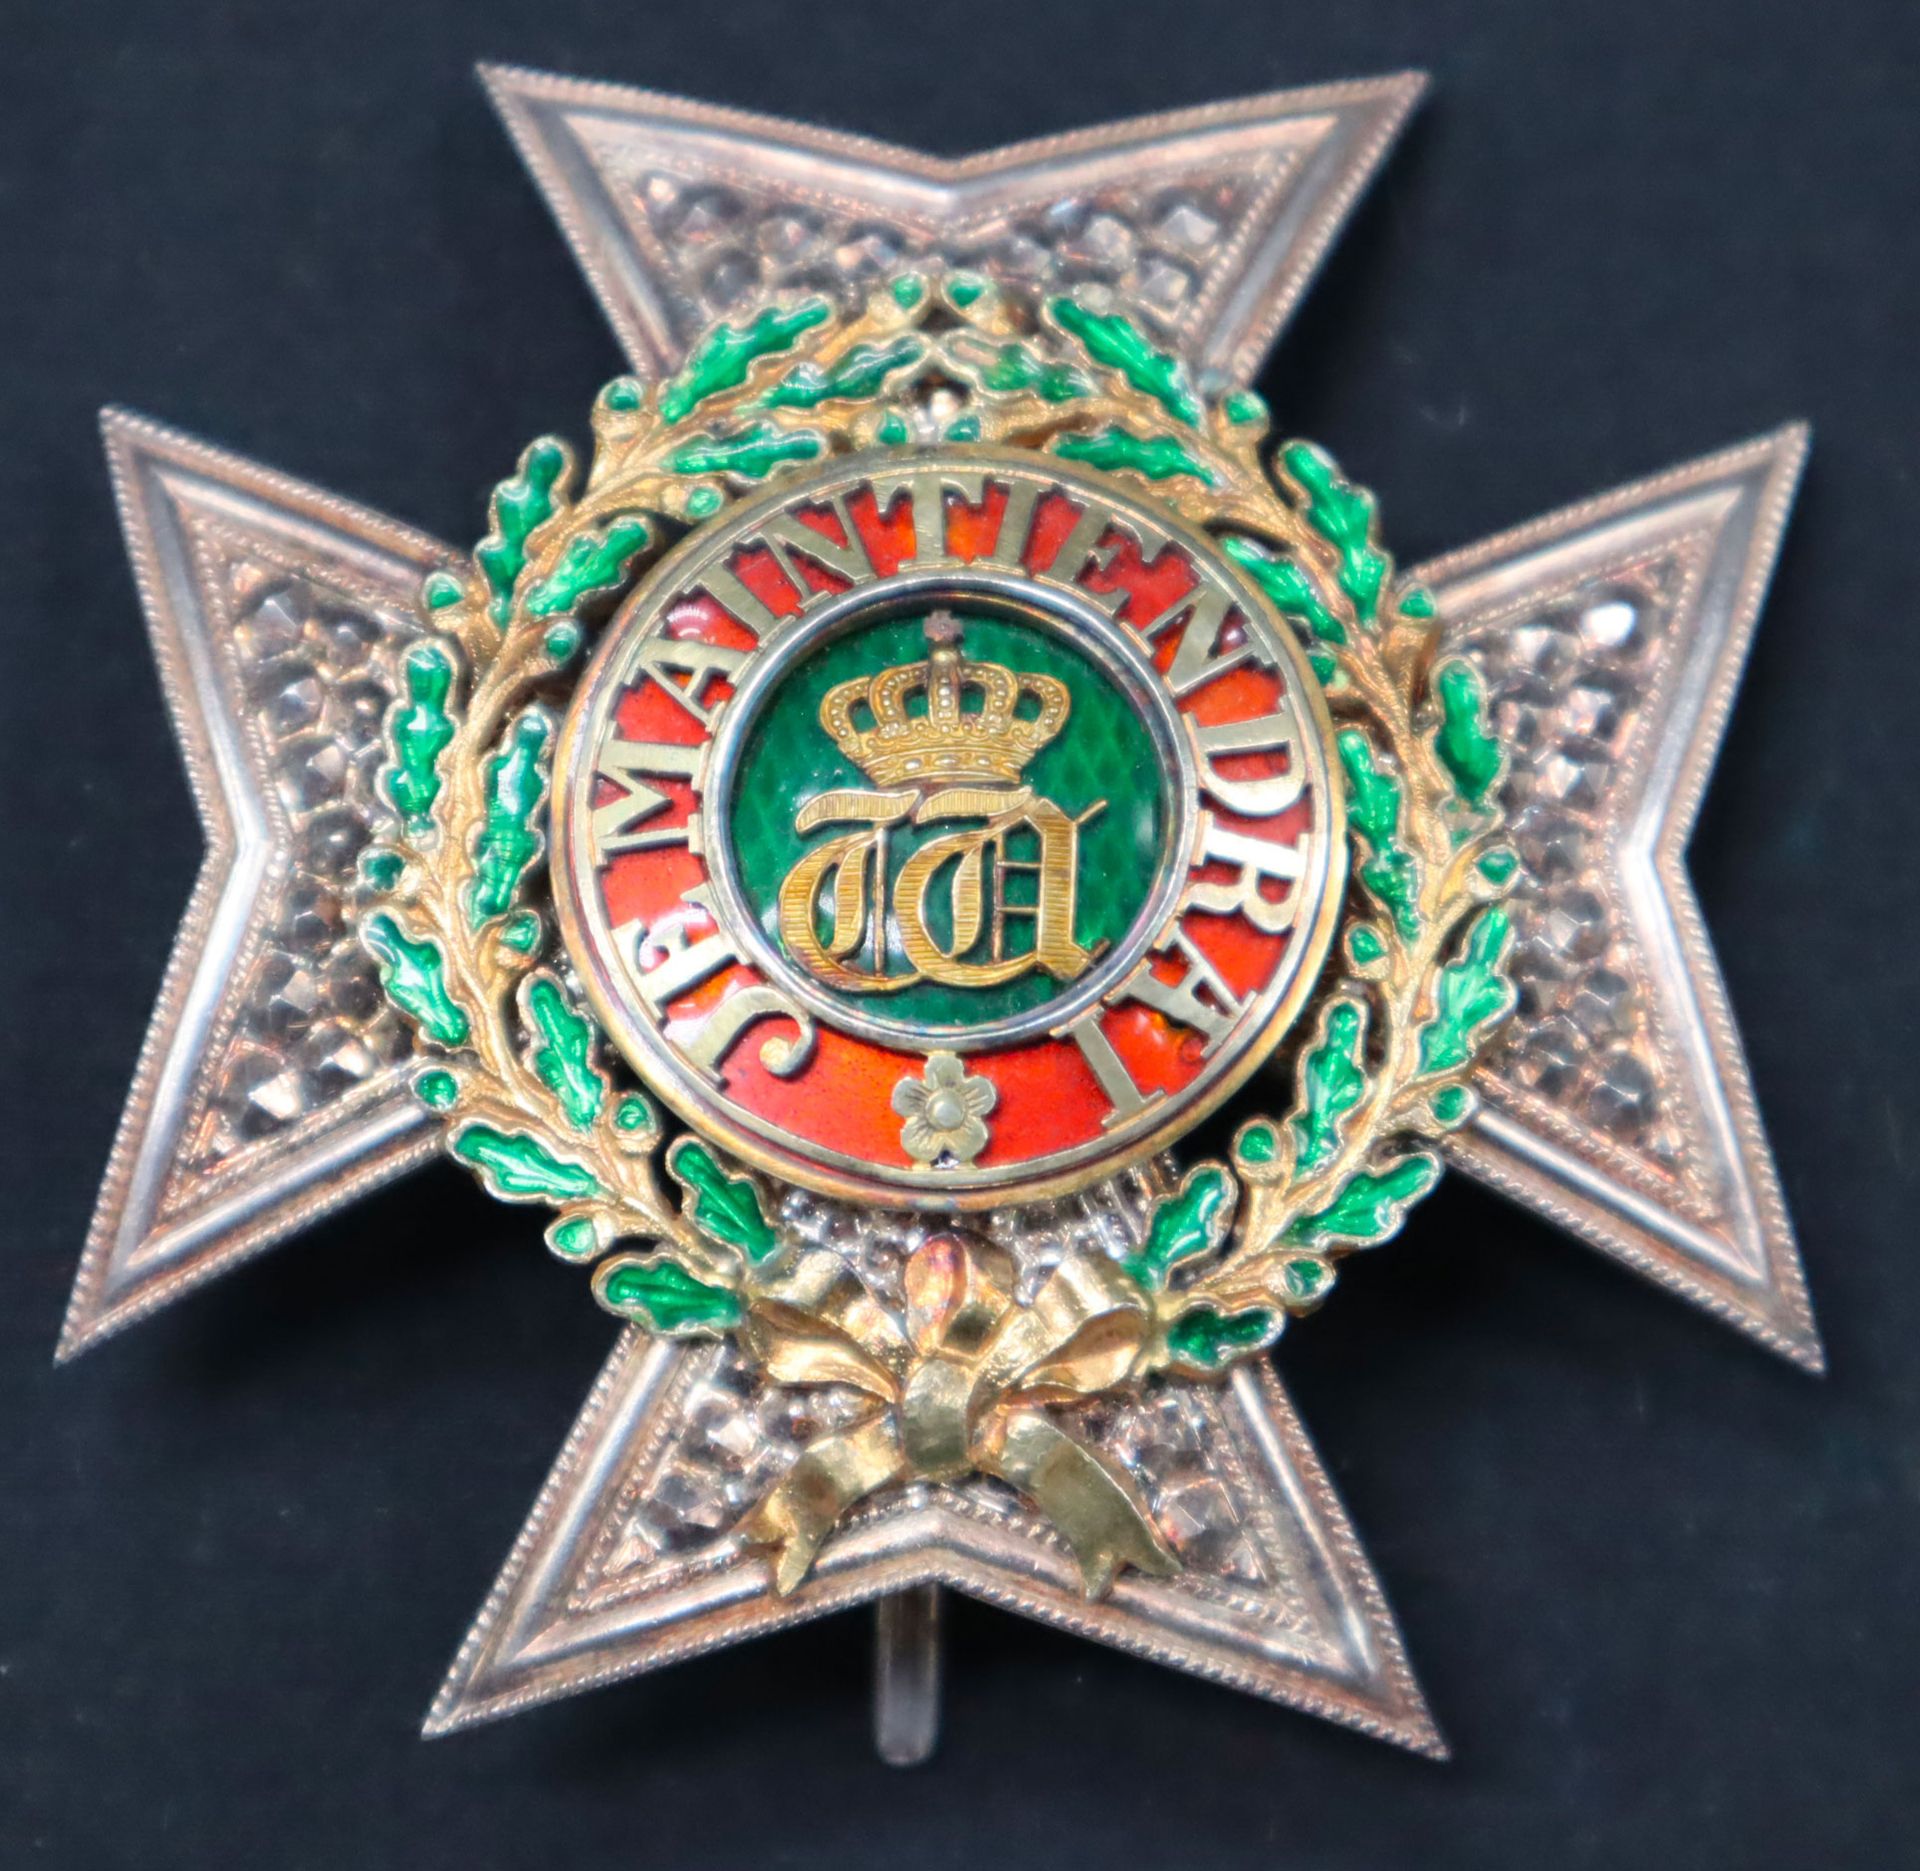 Null Luxemburg - Orden der Eichenkrone, Großoffiziersplakette aus Silber, ziseli&hellip;